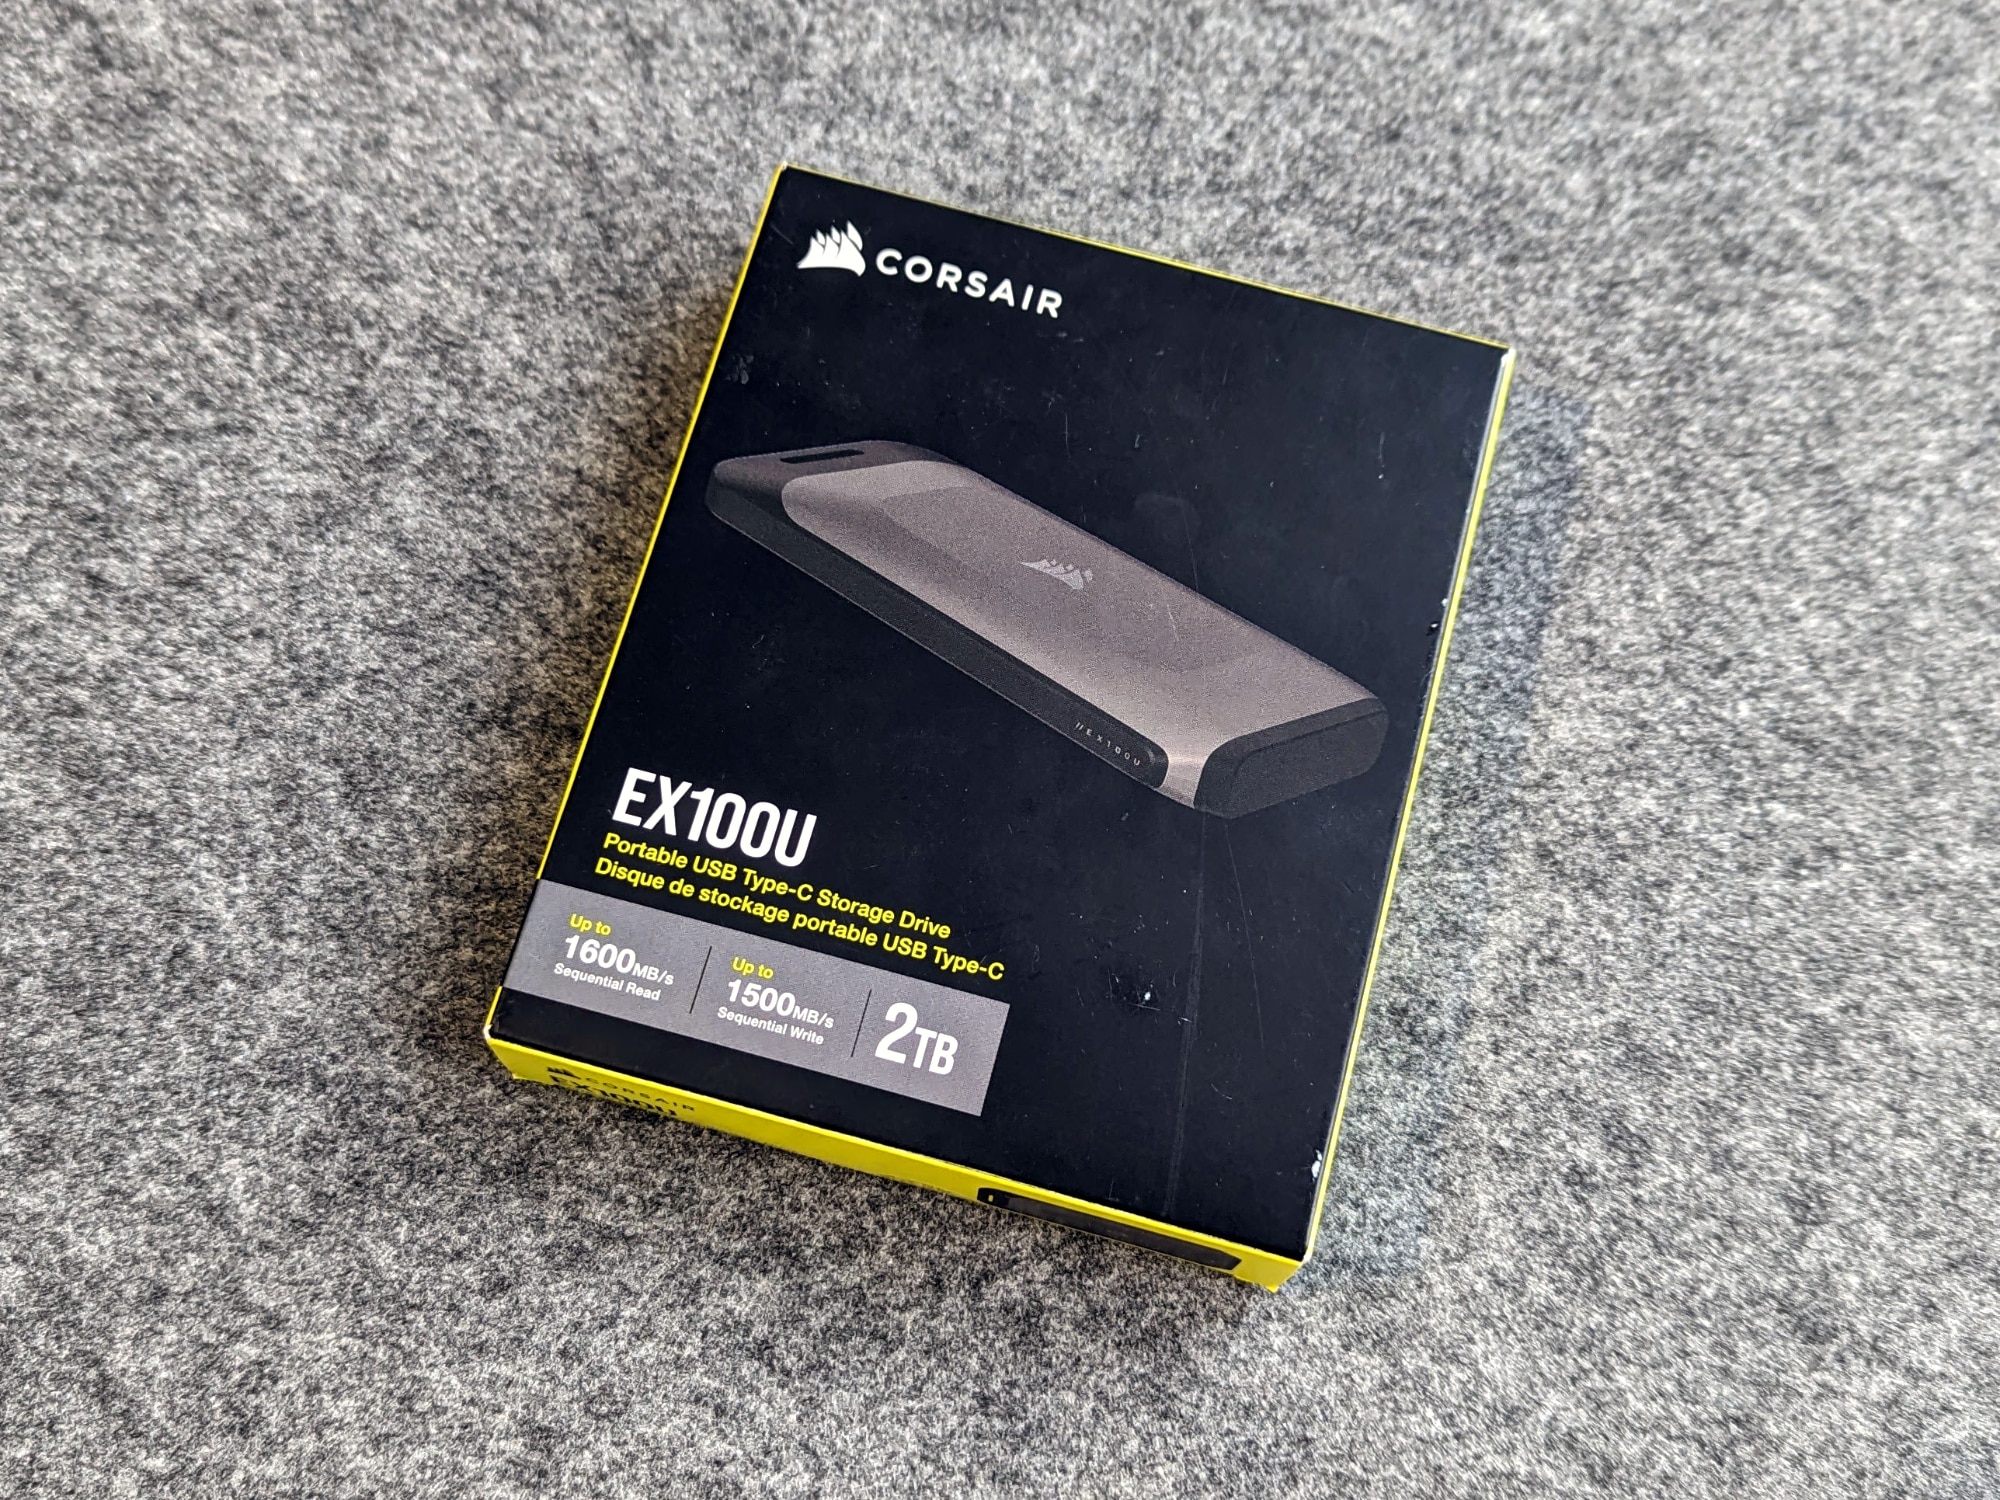 Corsair EX100U 2TB Portable USB Type-C SSD Review - ExtremeHW